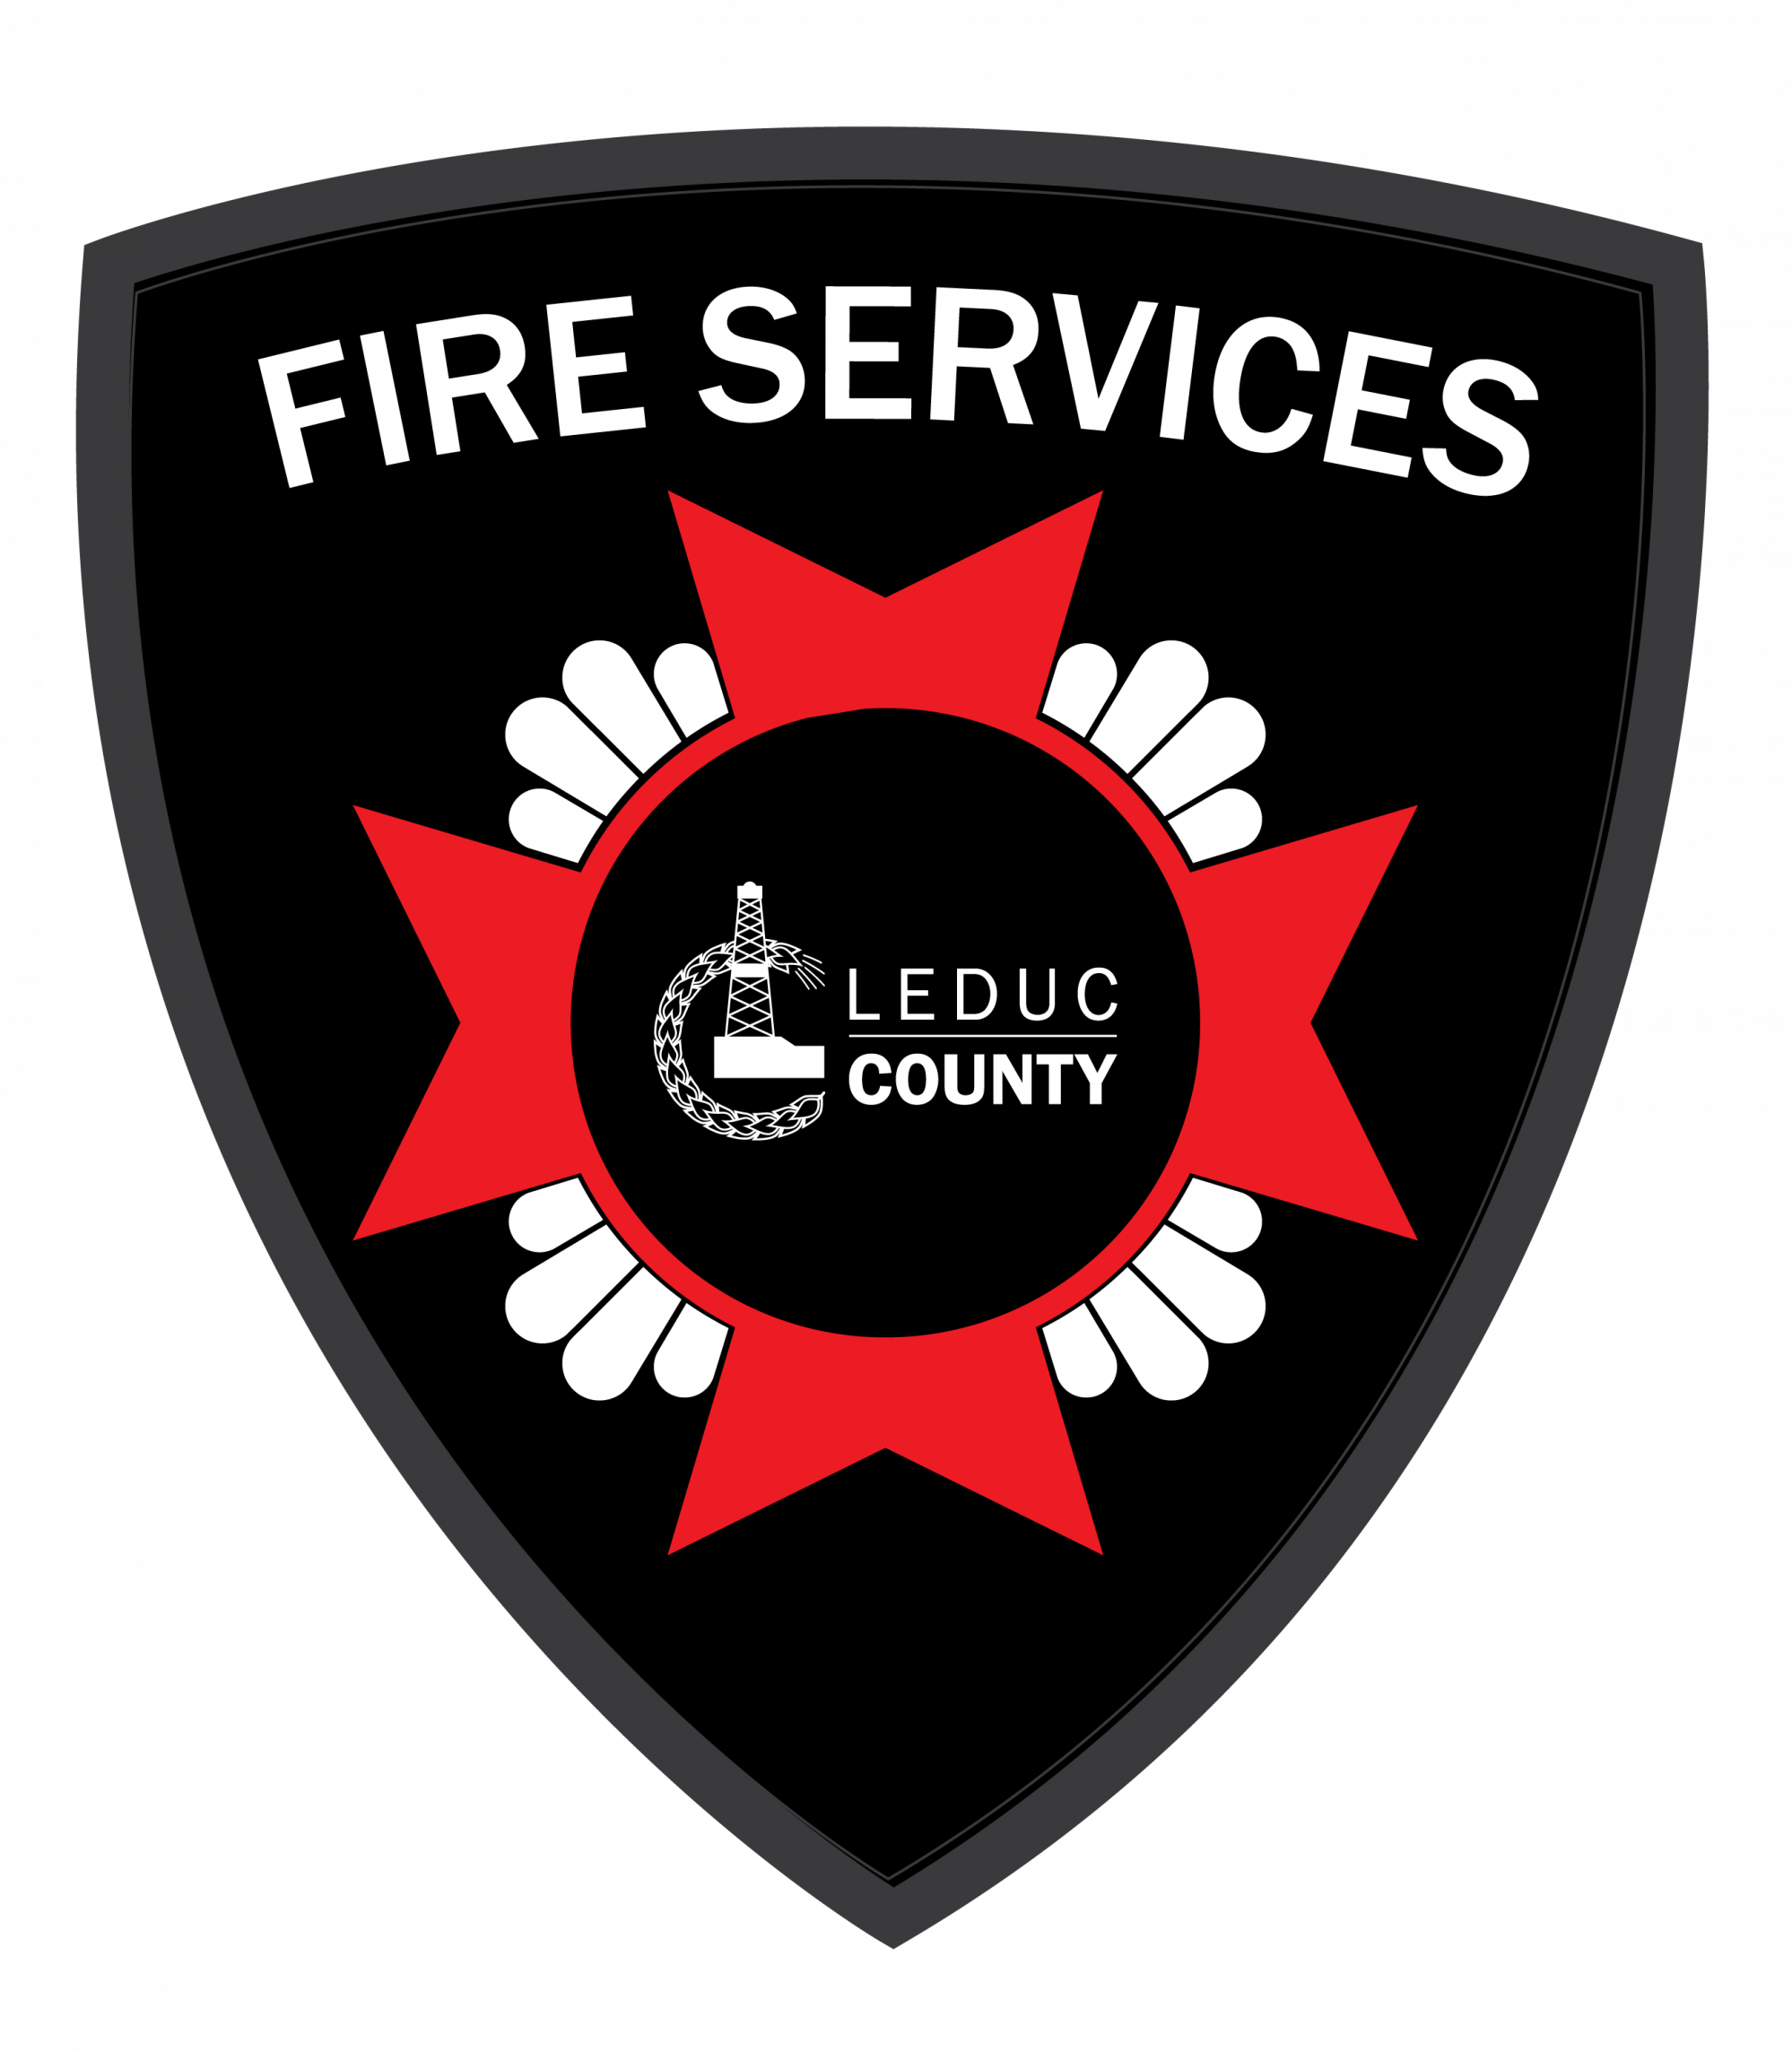 Leduc County Fire Services Crest